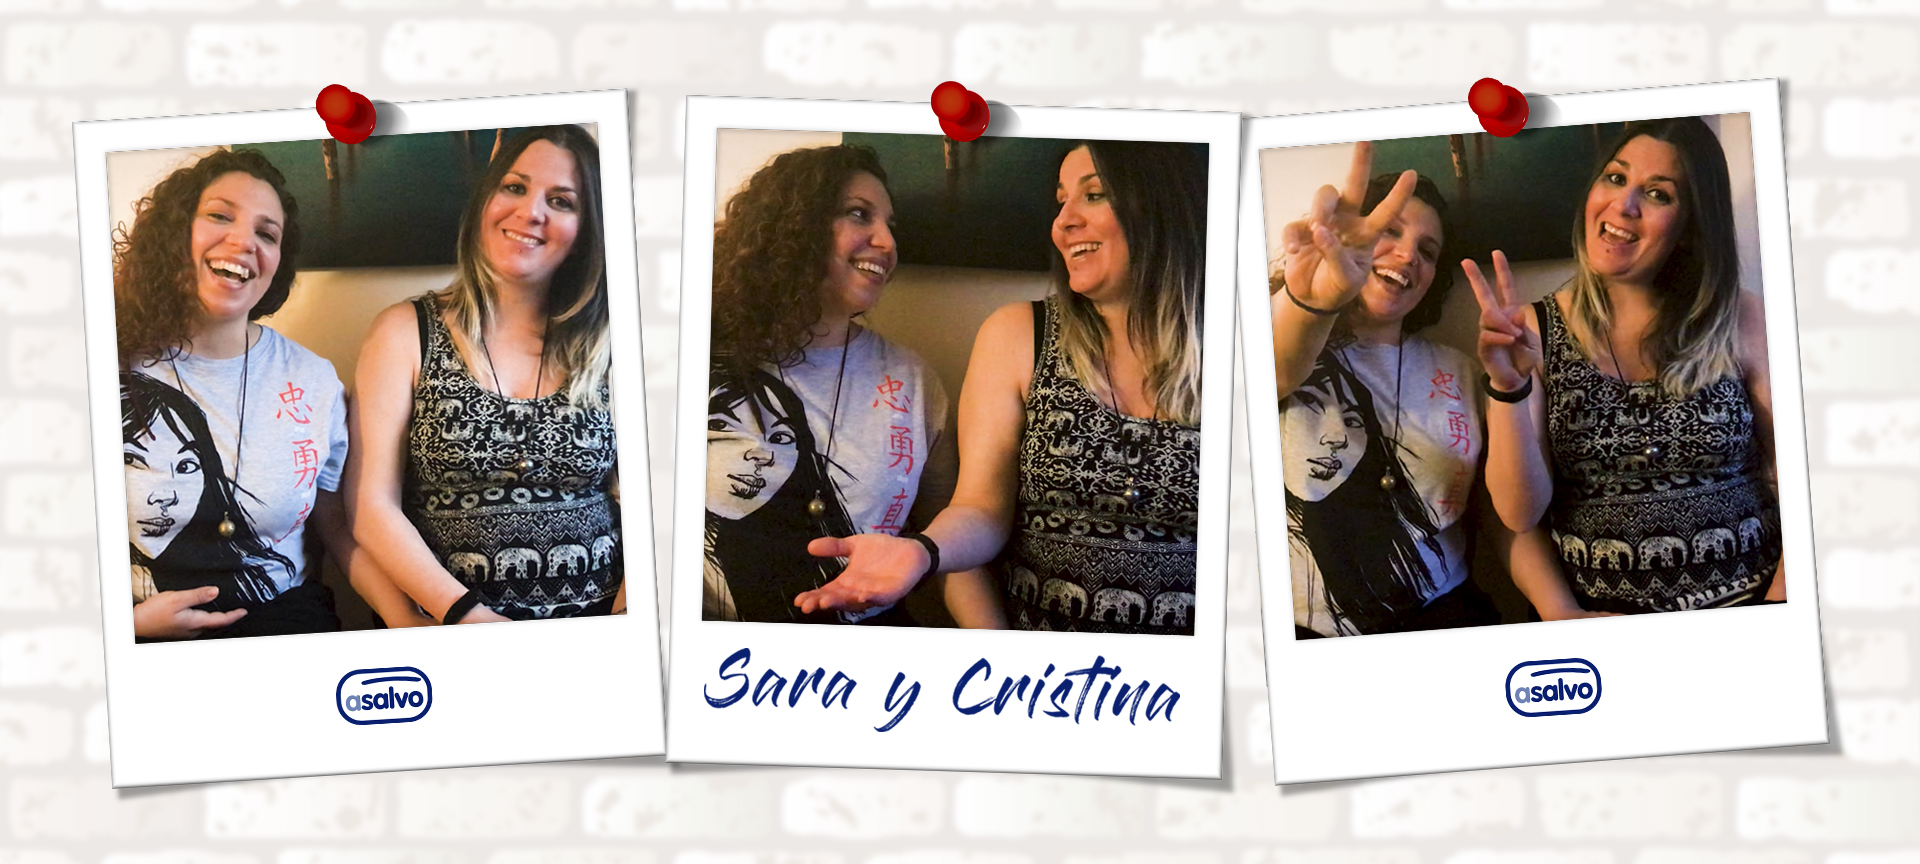 Sara Cristina - Como é a relação com a família de vocês?